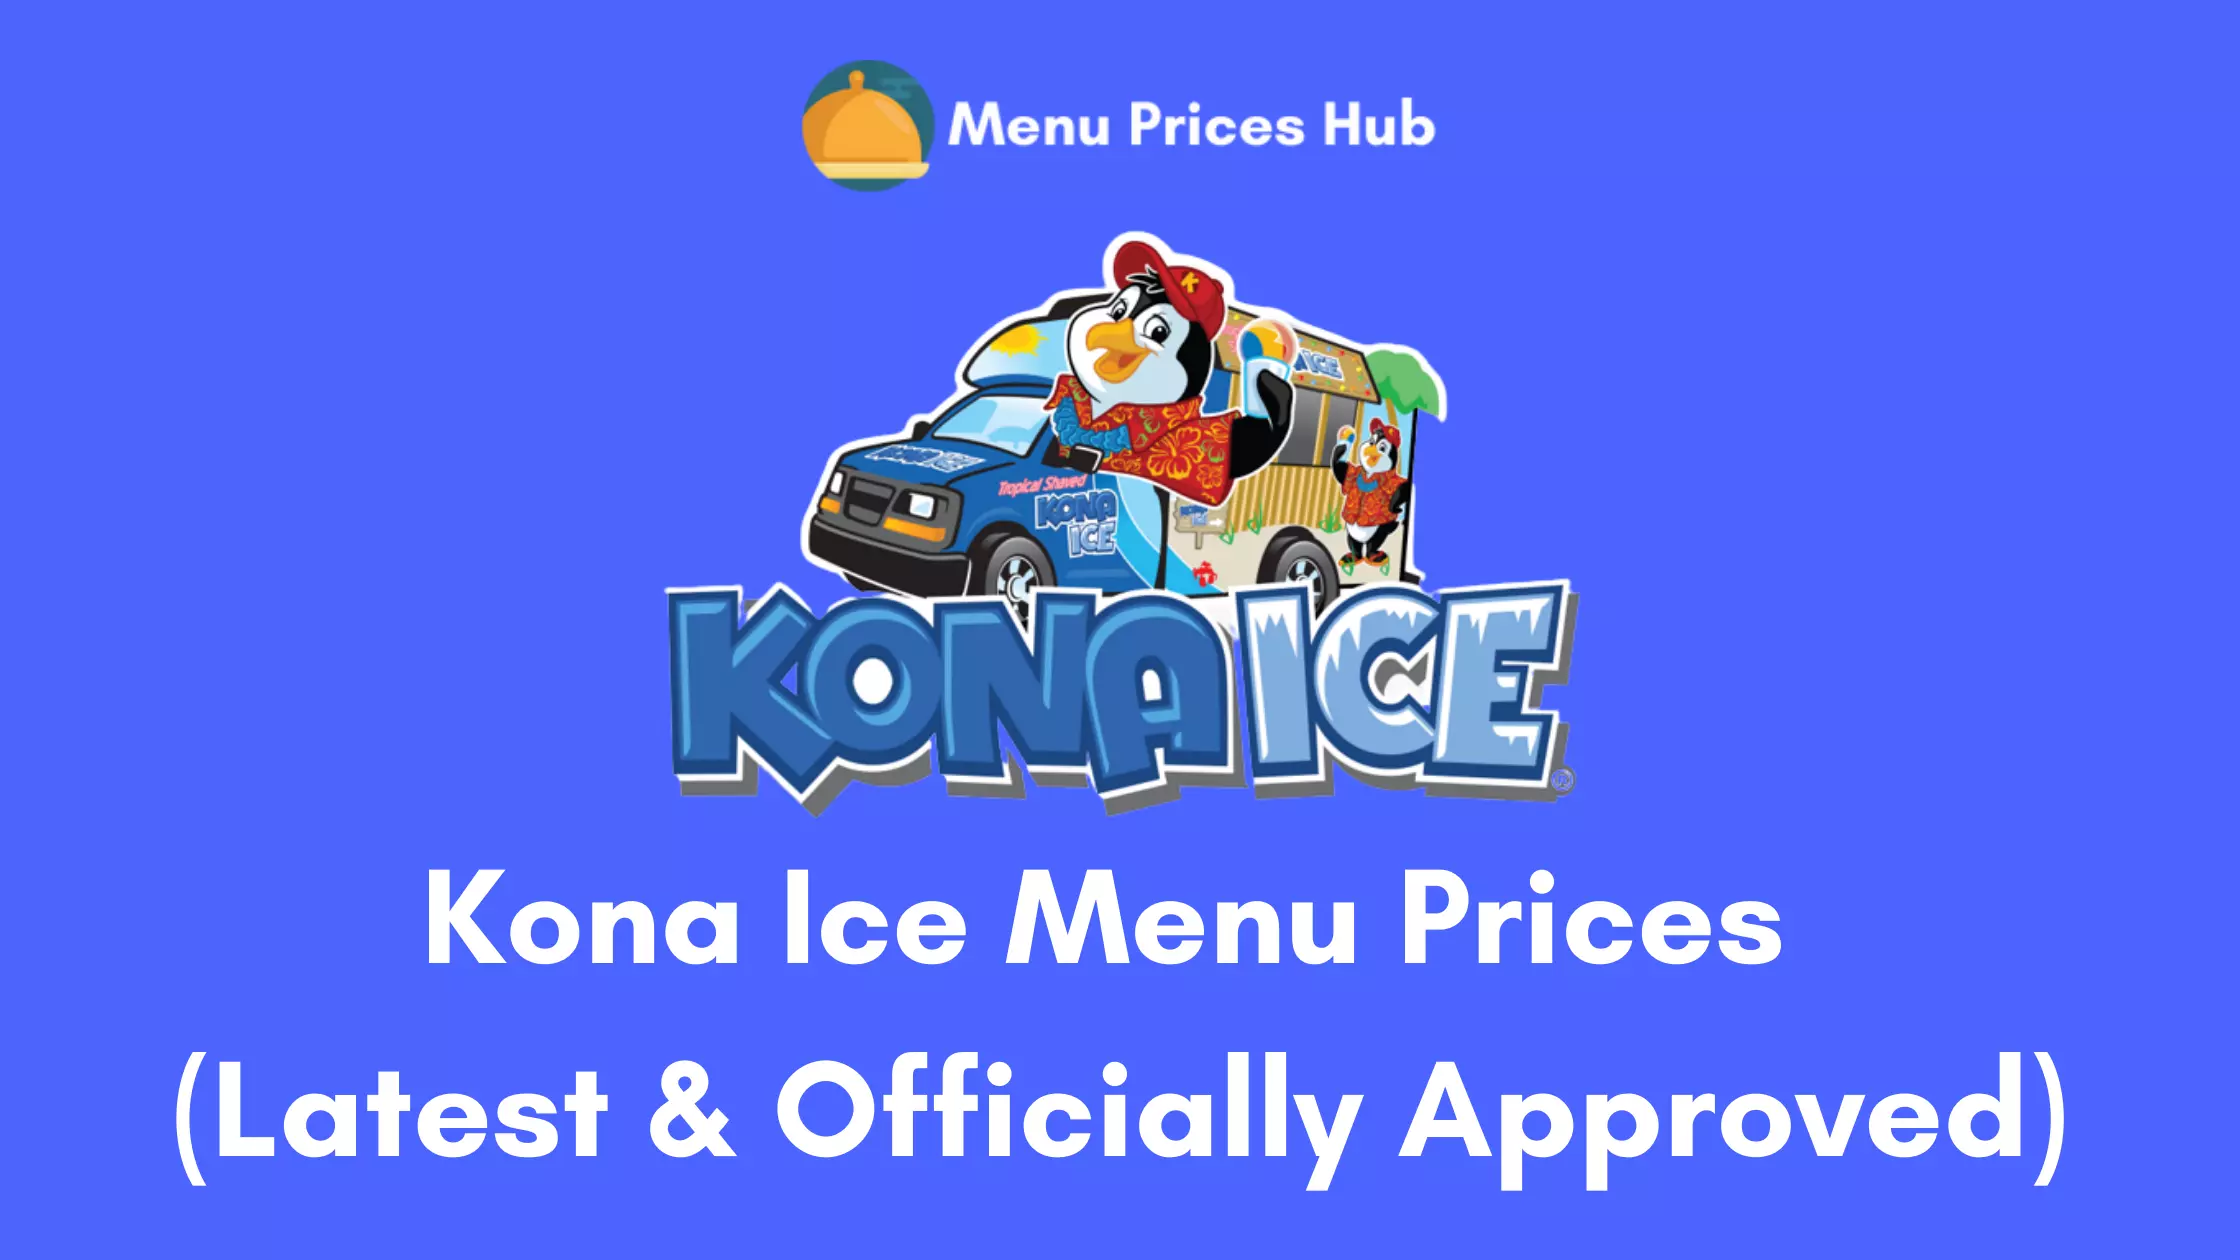 Kona Ice menu prices